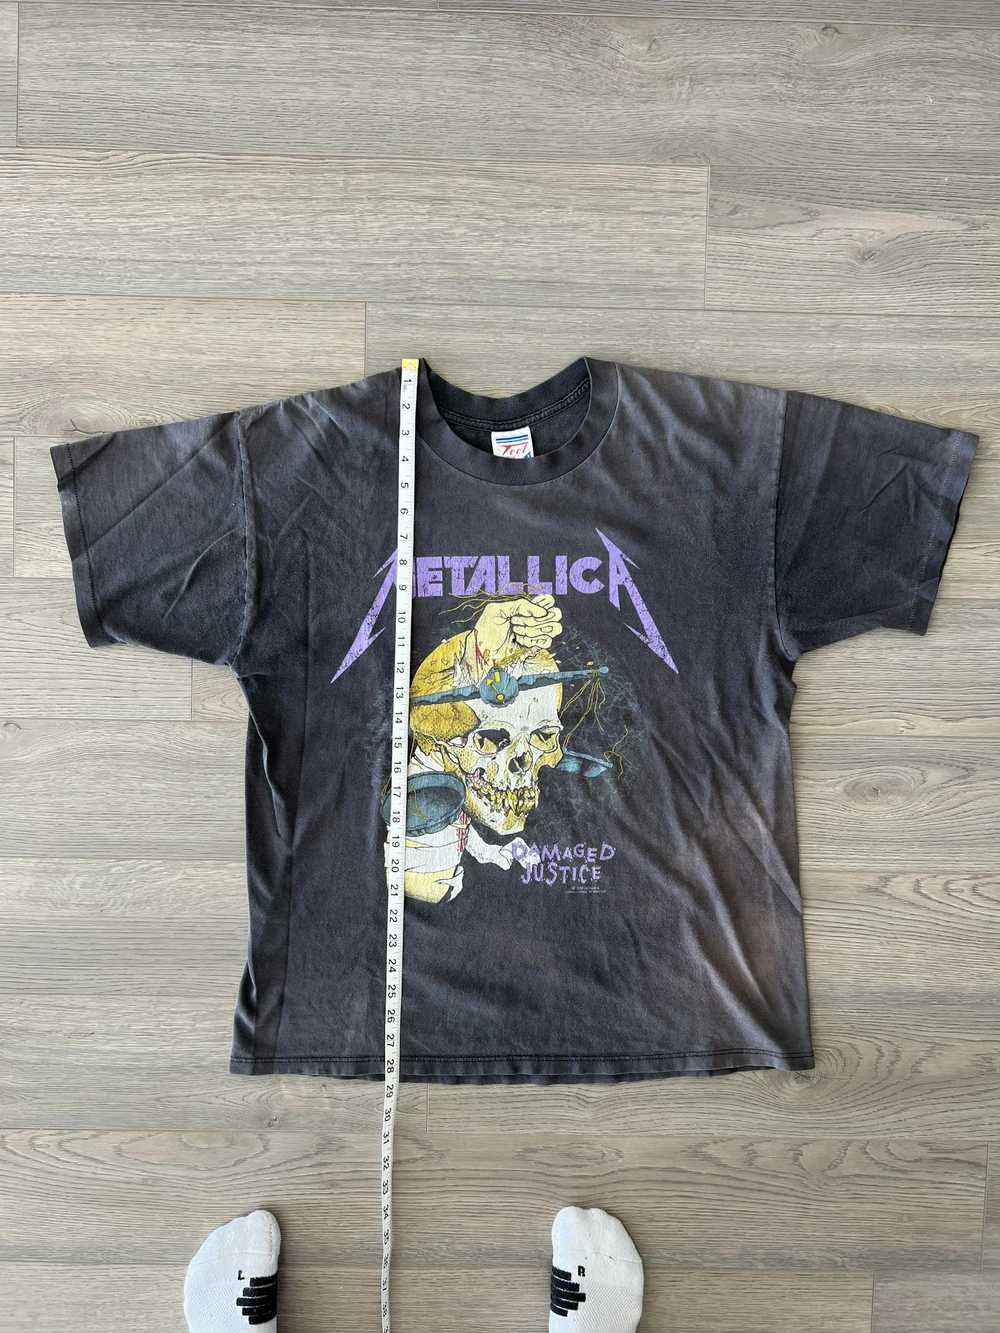 Vintage Vintage metallica damaged justice shirt - image 7